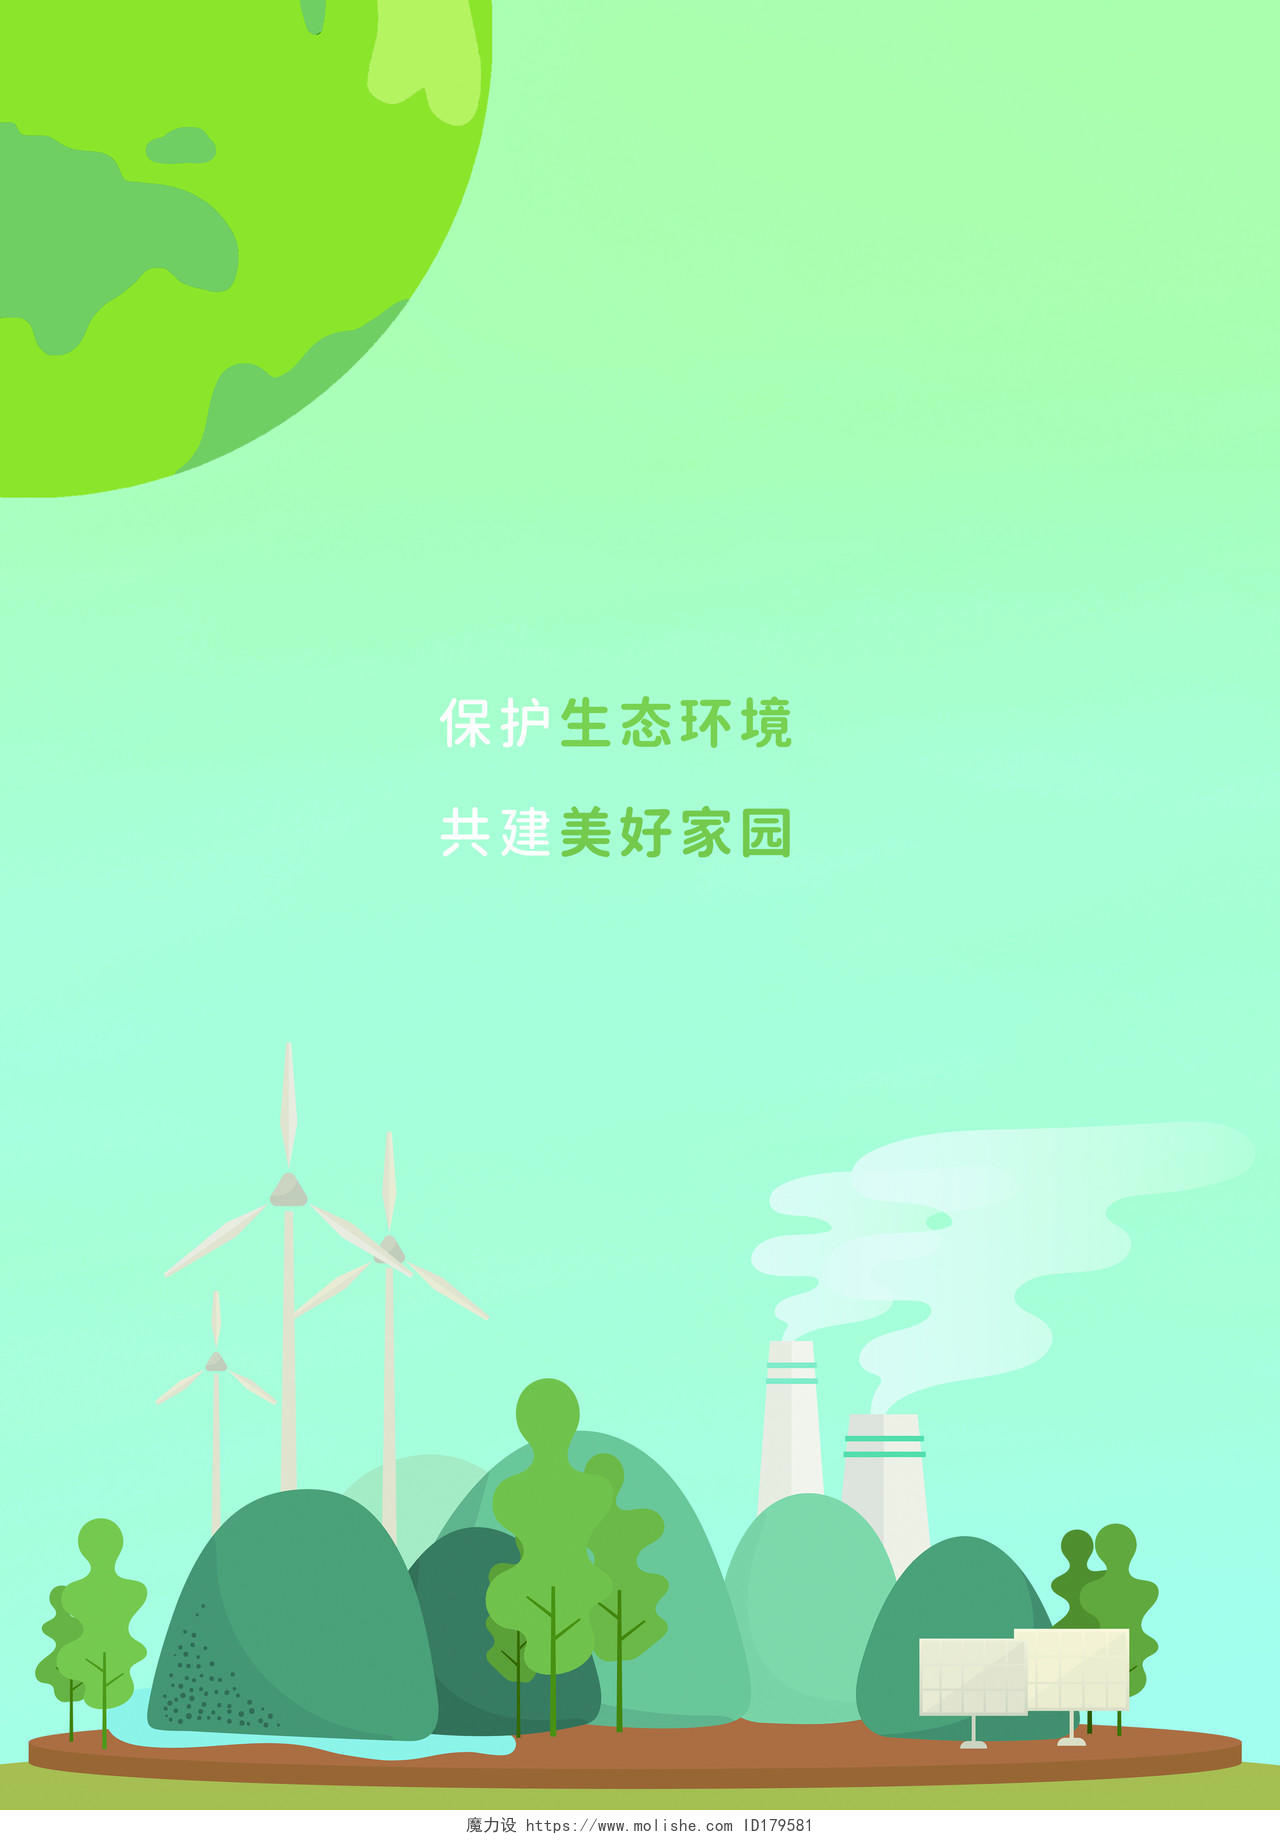 绿色简约环境宣传画册环保主题画册封面